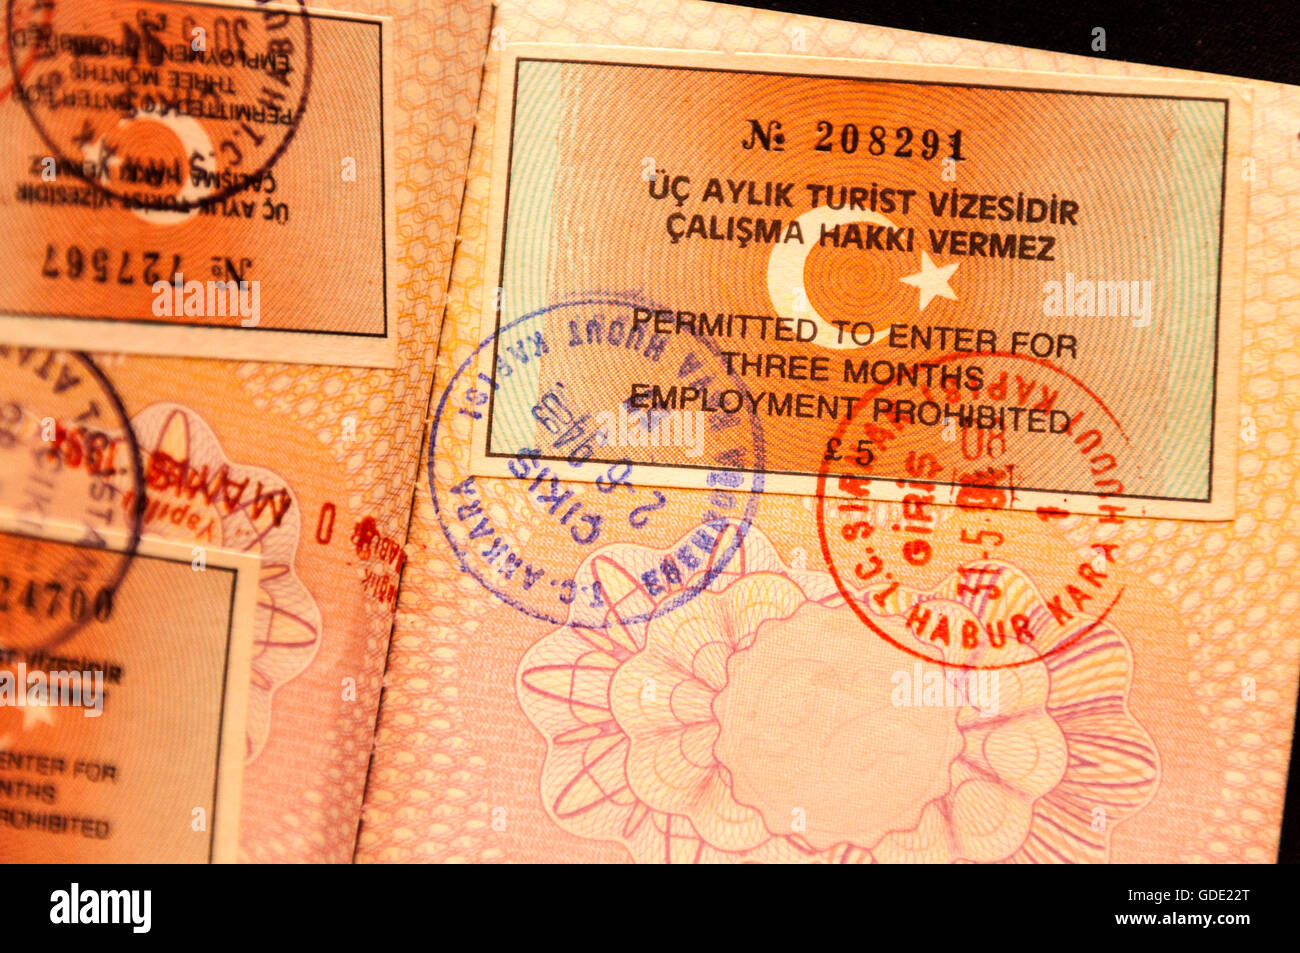 Il 16 luglio 2016. Tentato colpo di stato perpetrato in Turchia. L'immagine mostra il visto turco nel passaporto UE in questo caso UK passaporto britannico. Foto: Richard Wayman Foto Stock